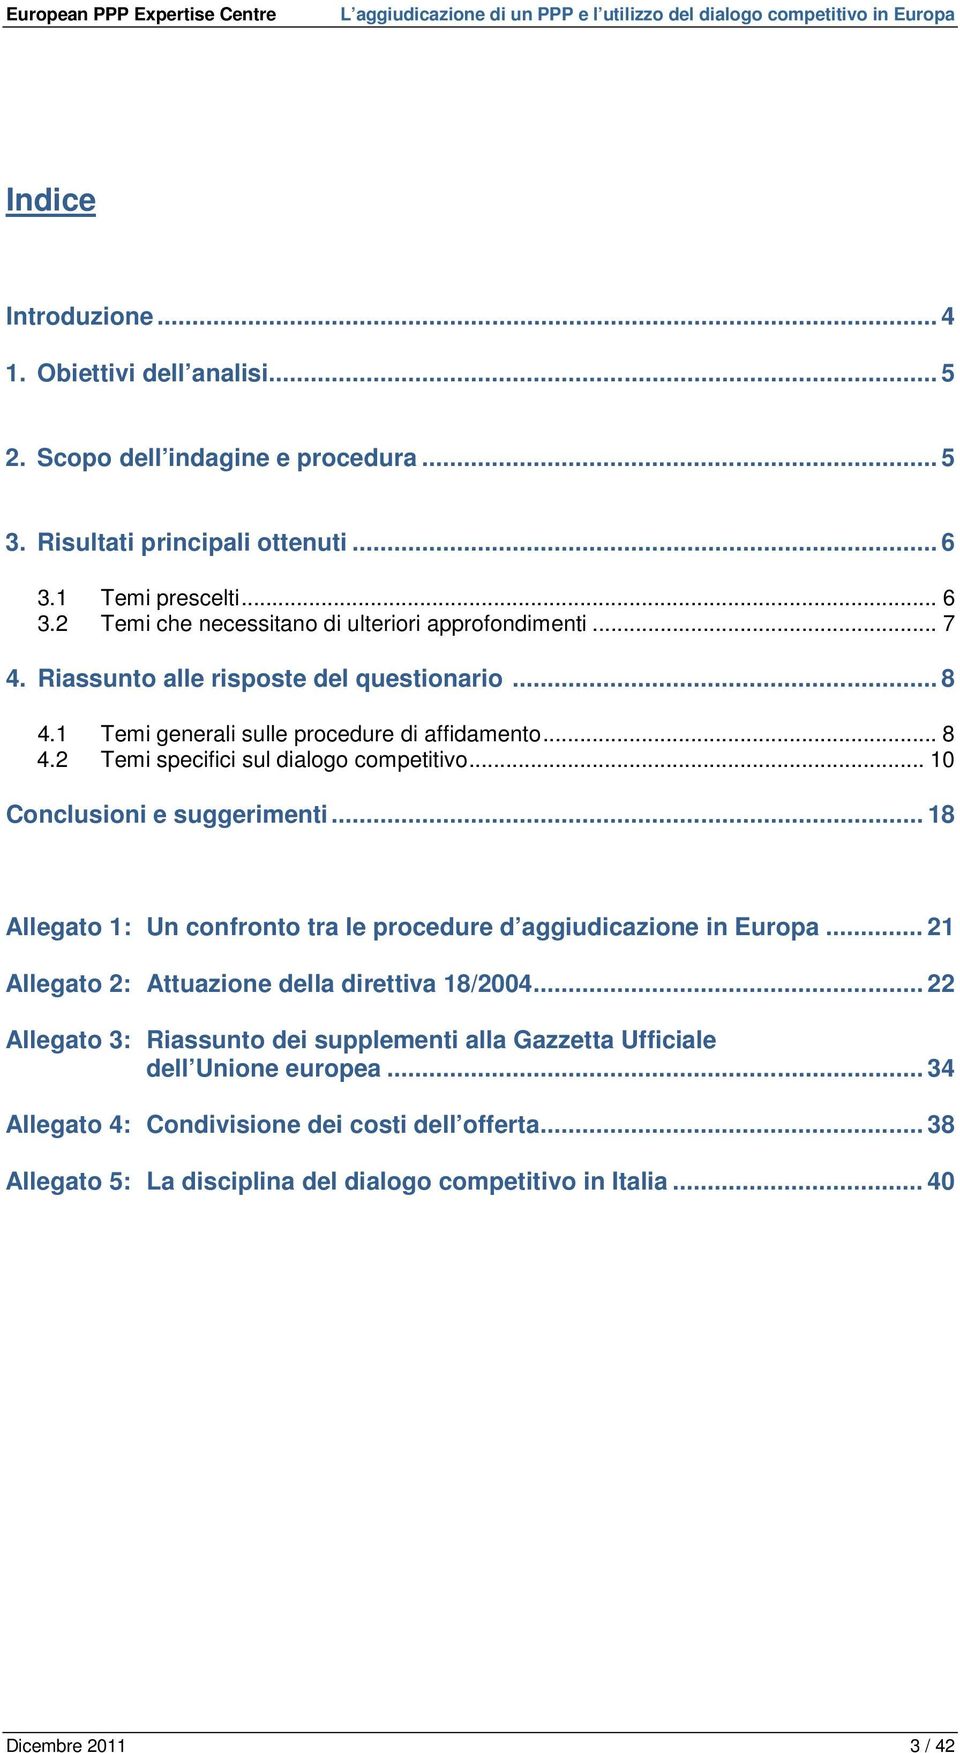 .. 18 Allegato 1: Un confronto tra le procedure d aggiudicazione in Europa... 21 Allegato 2: Attuazione della direttiva 18/2004.